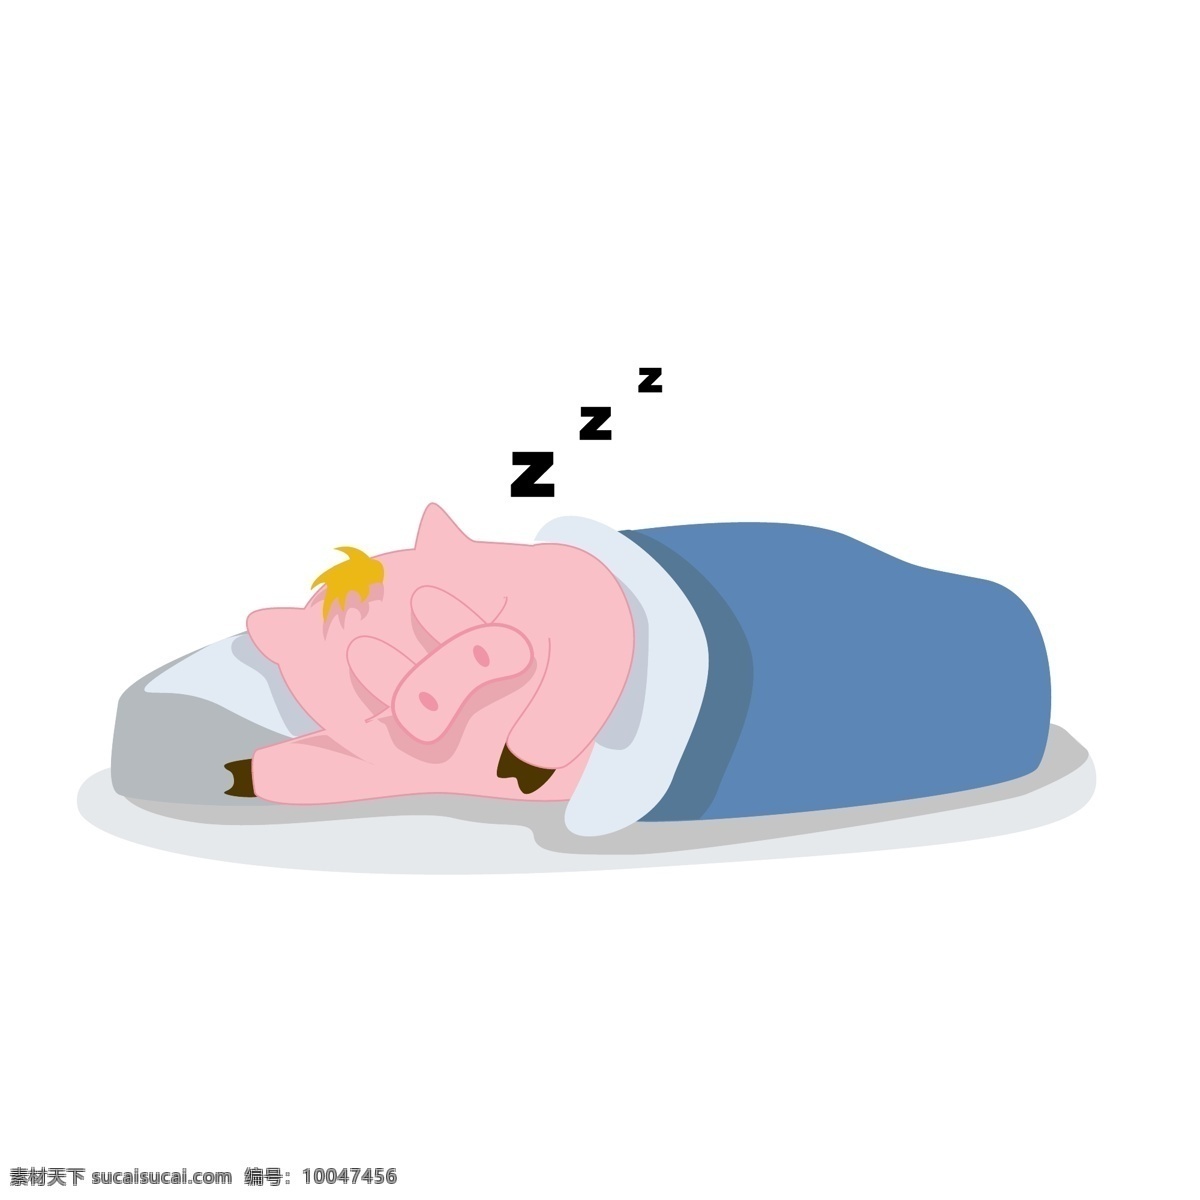 简约 猪年 卡通 猪 形象 表情 包 可爱 风格 睡觉 卡通猪 表情包 矢量 晚安 简约猪 可爱卡通 猪形象 睡觉猪